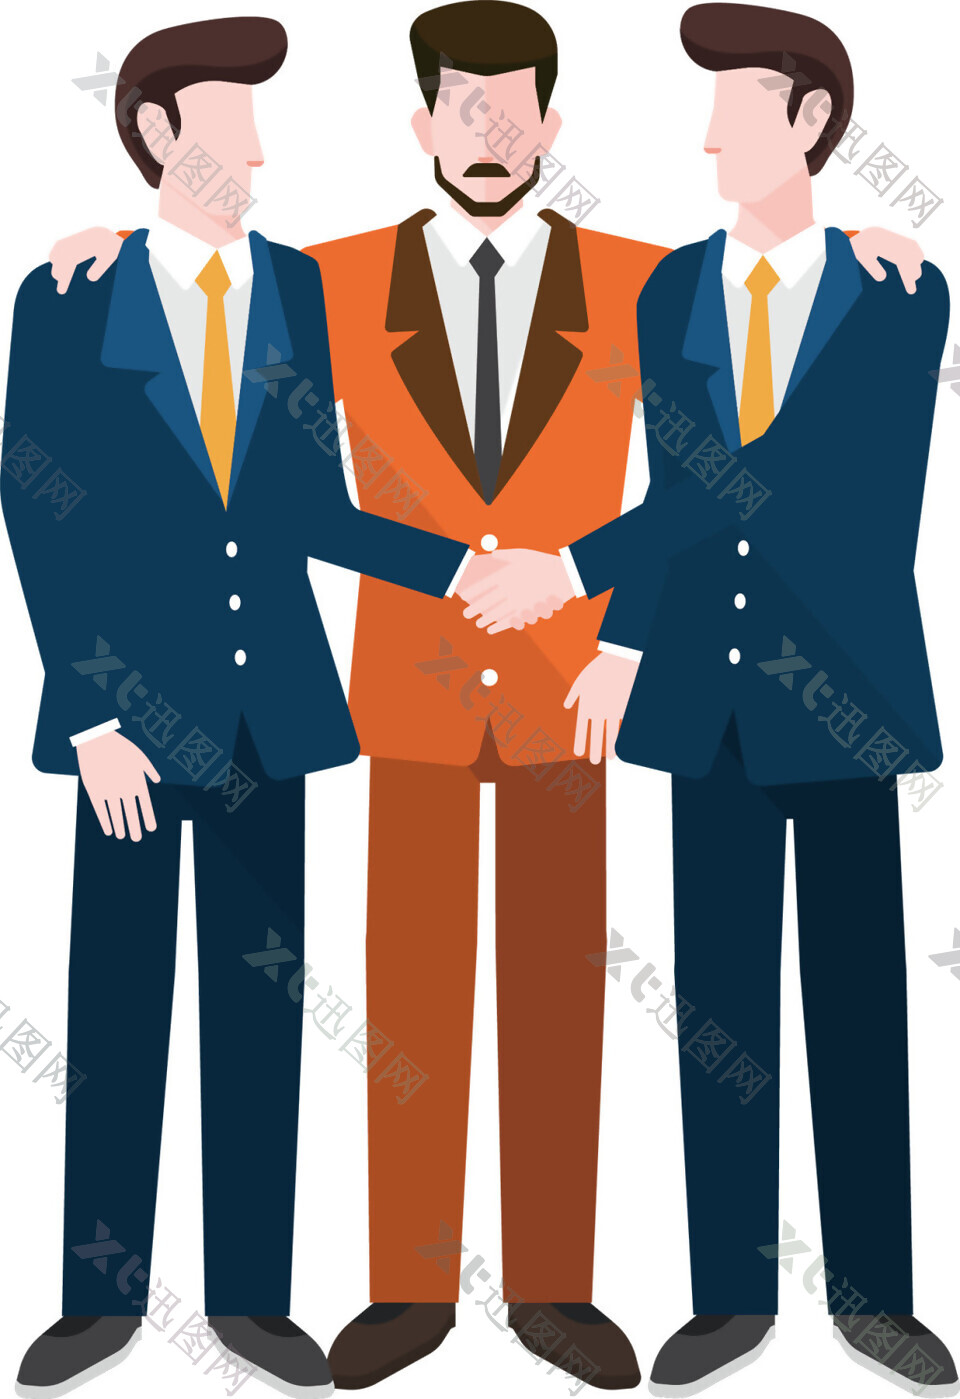 三个握手的扁平化商务团队人物